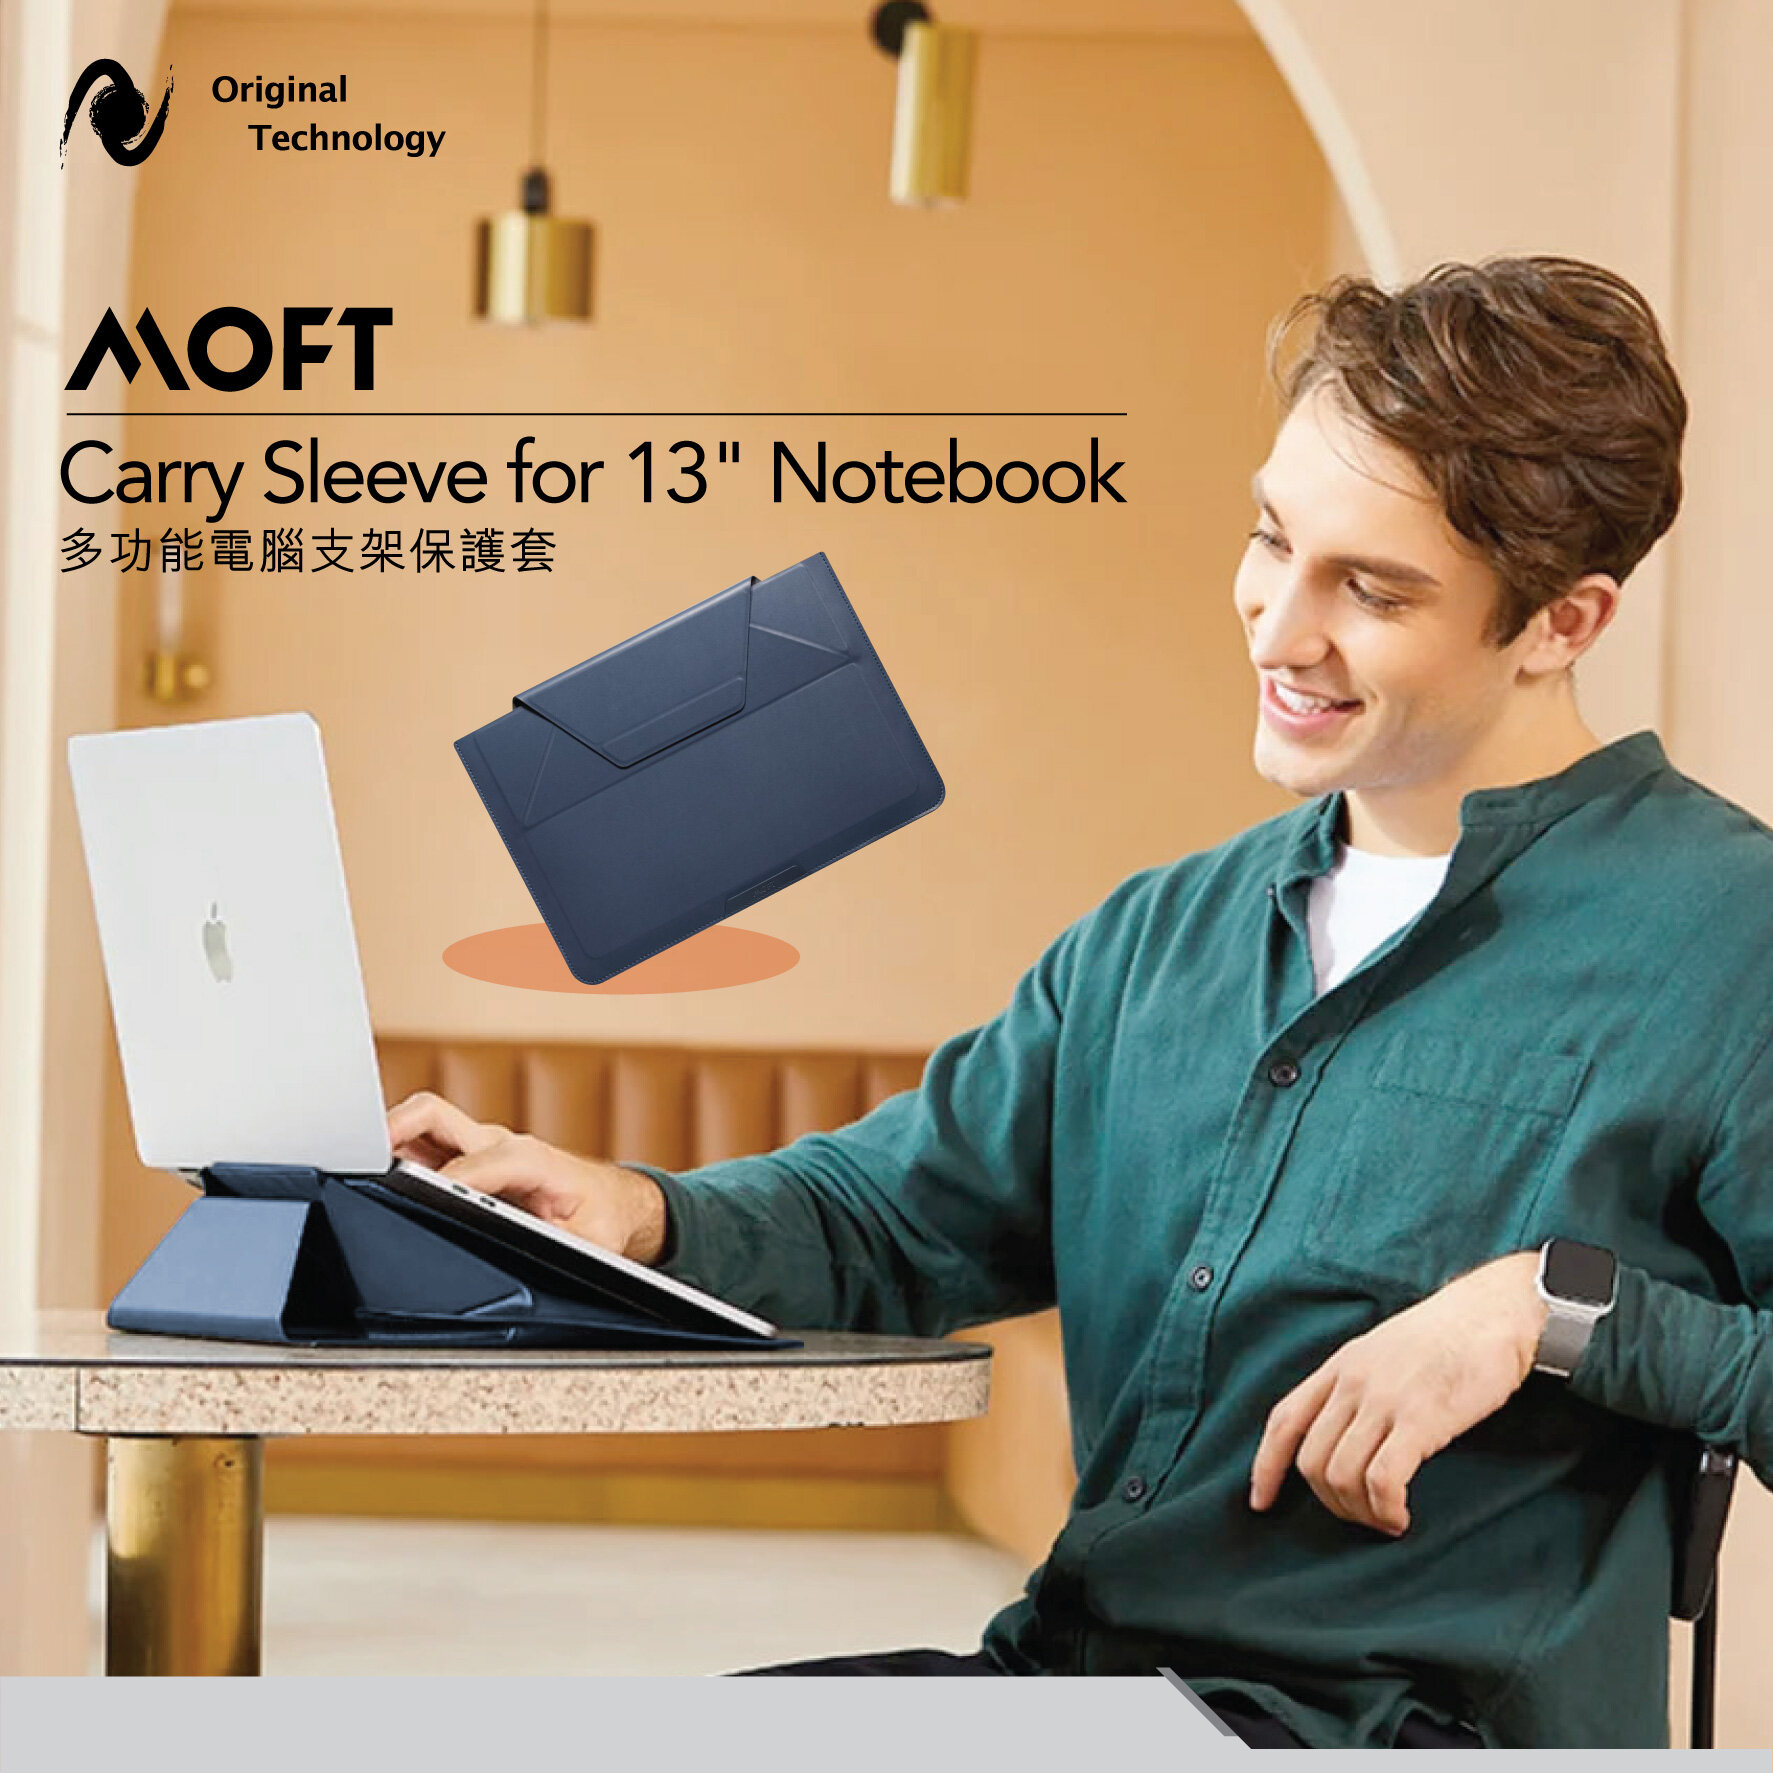 最輕薄的舒適感 – MOFT Carry Sleeve for 13" Notebook